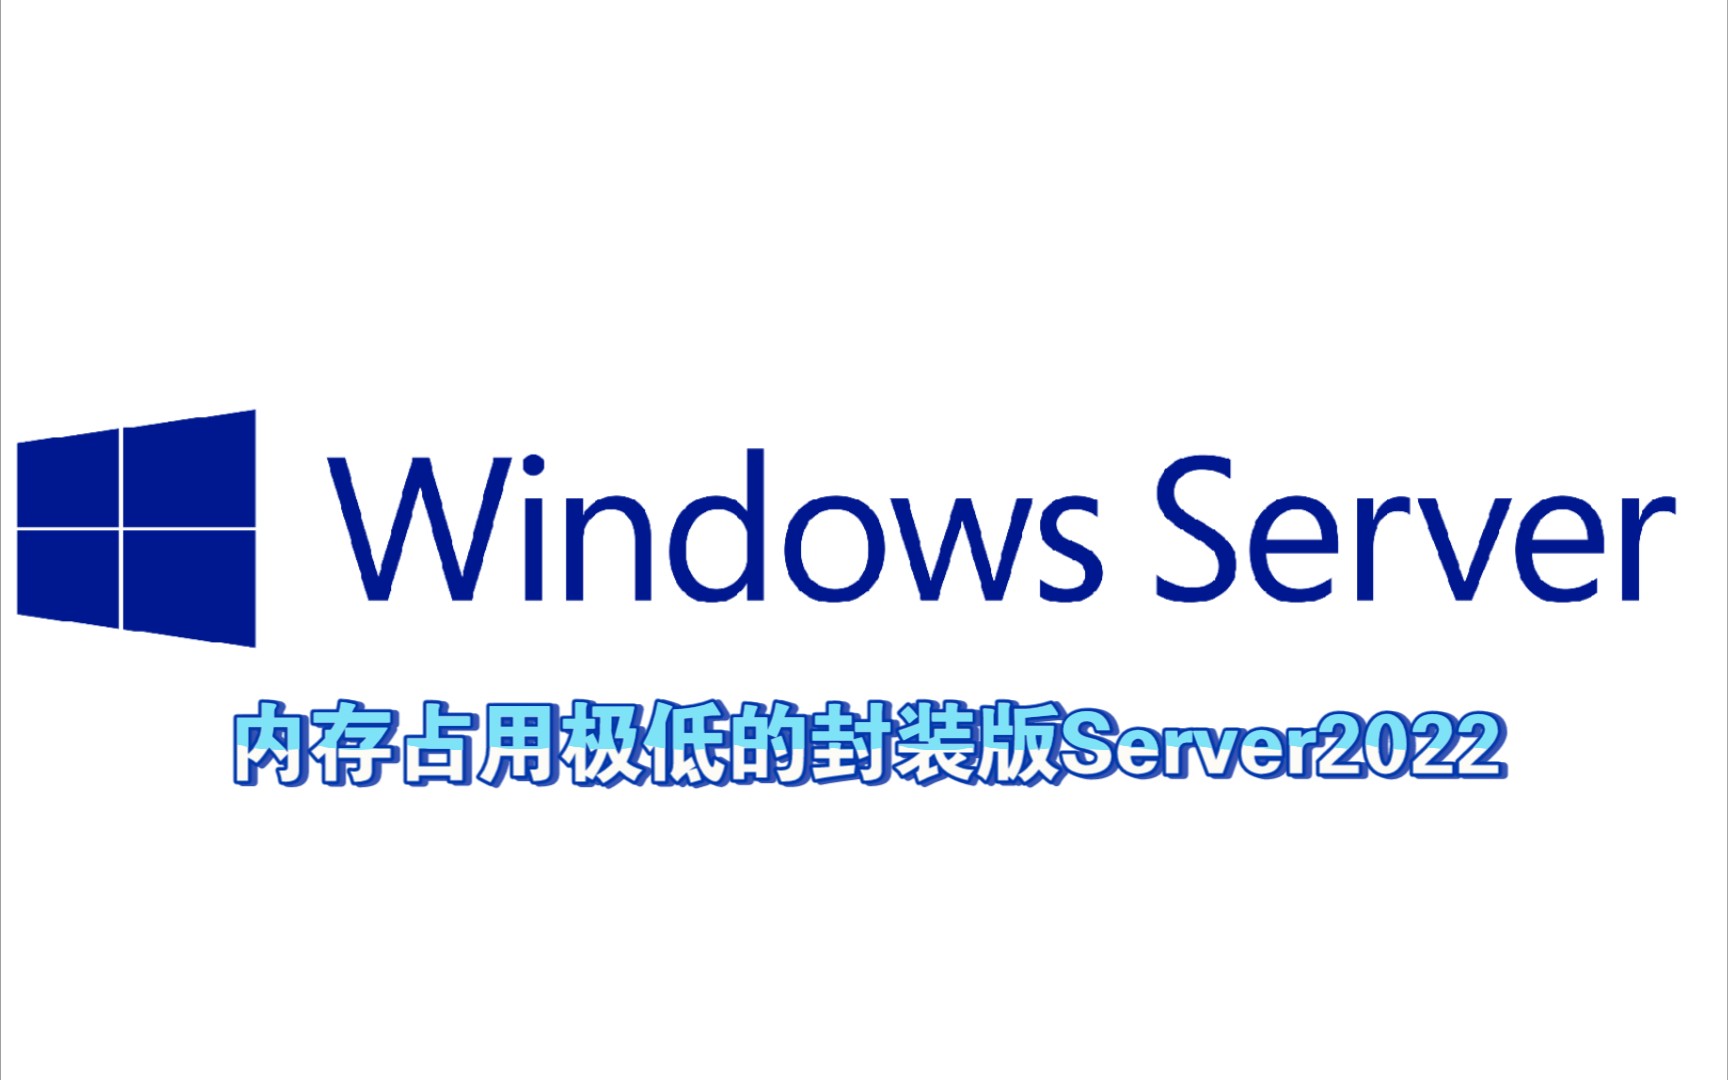 内存占用极低的Windows Server2022系统，极致丝滑